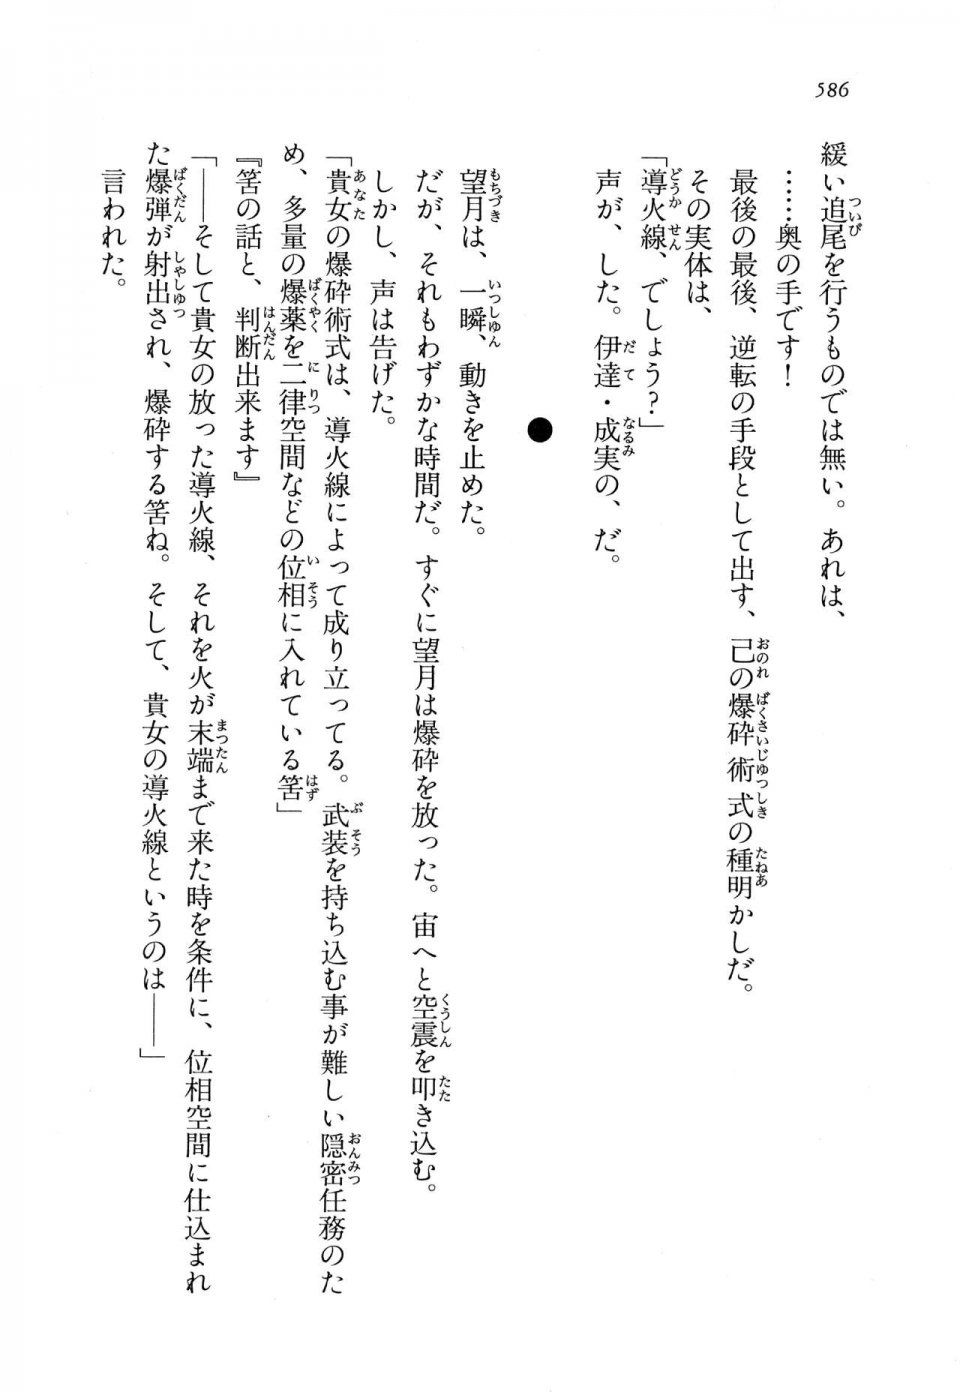 Kyoukai Senjou no Horizon LN Vol 11(5A) - Photo #586